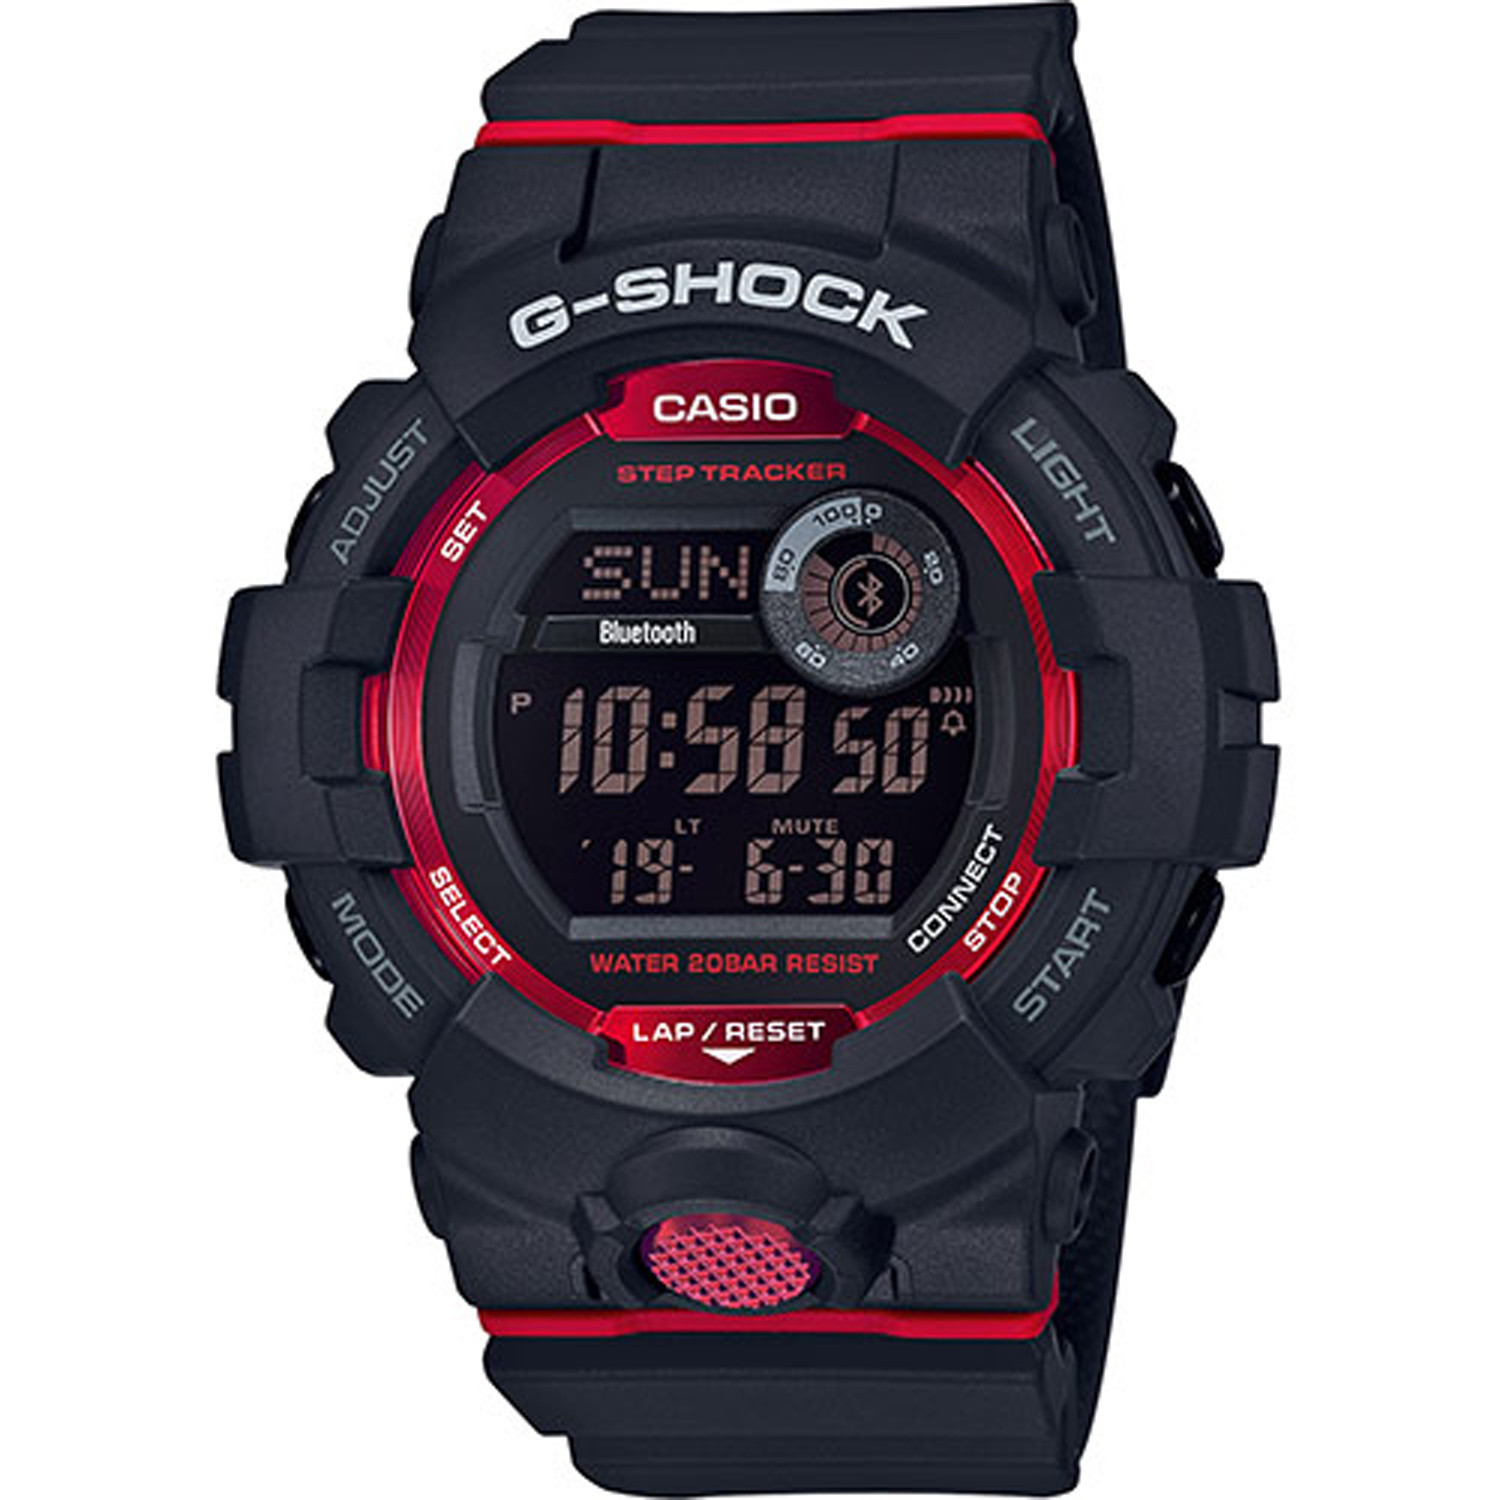 Montre Casio G-Shock noire et rouge
Bluetooth